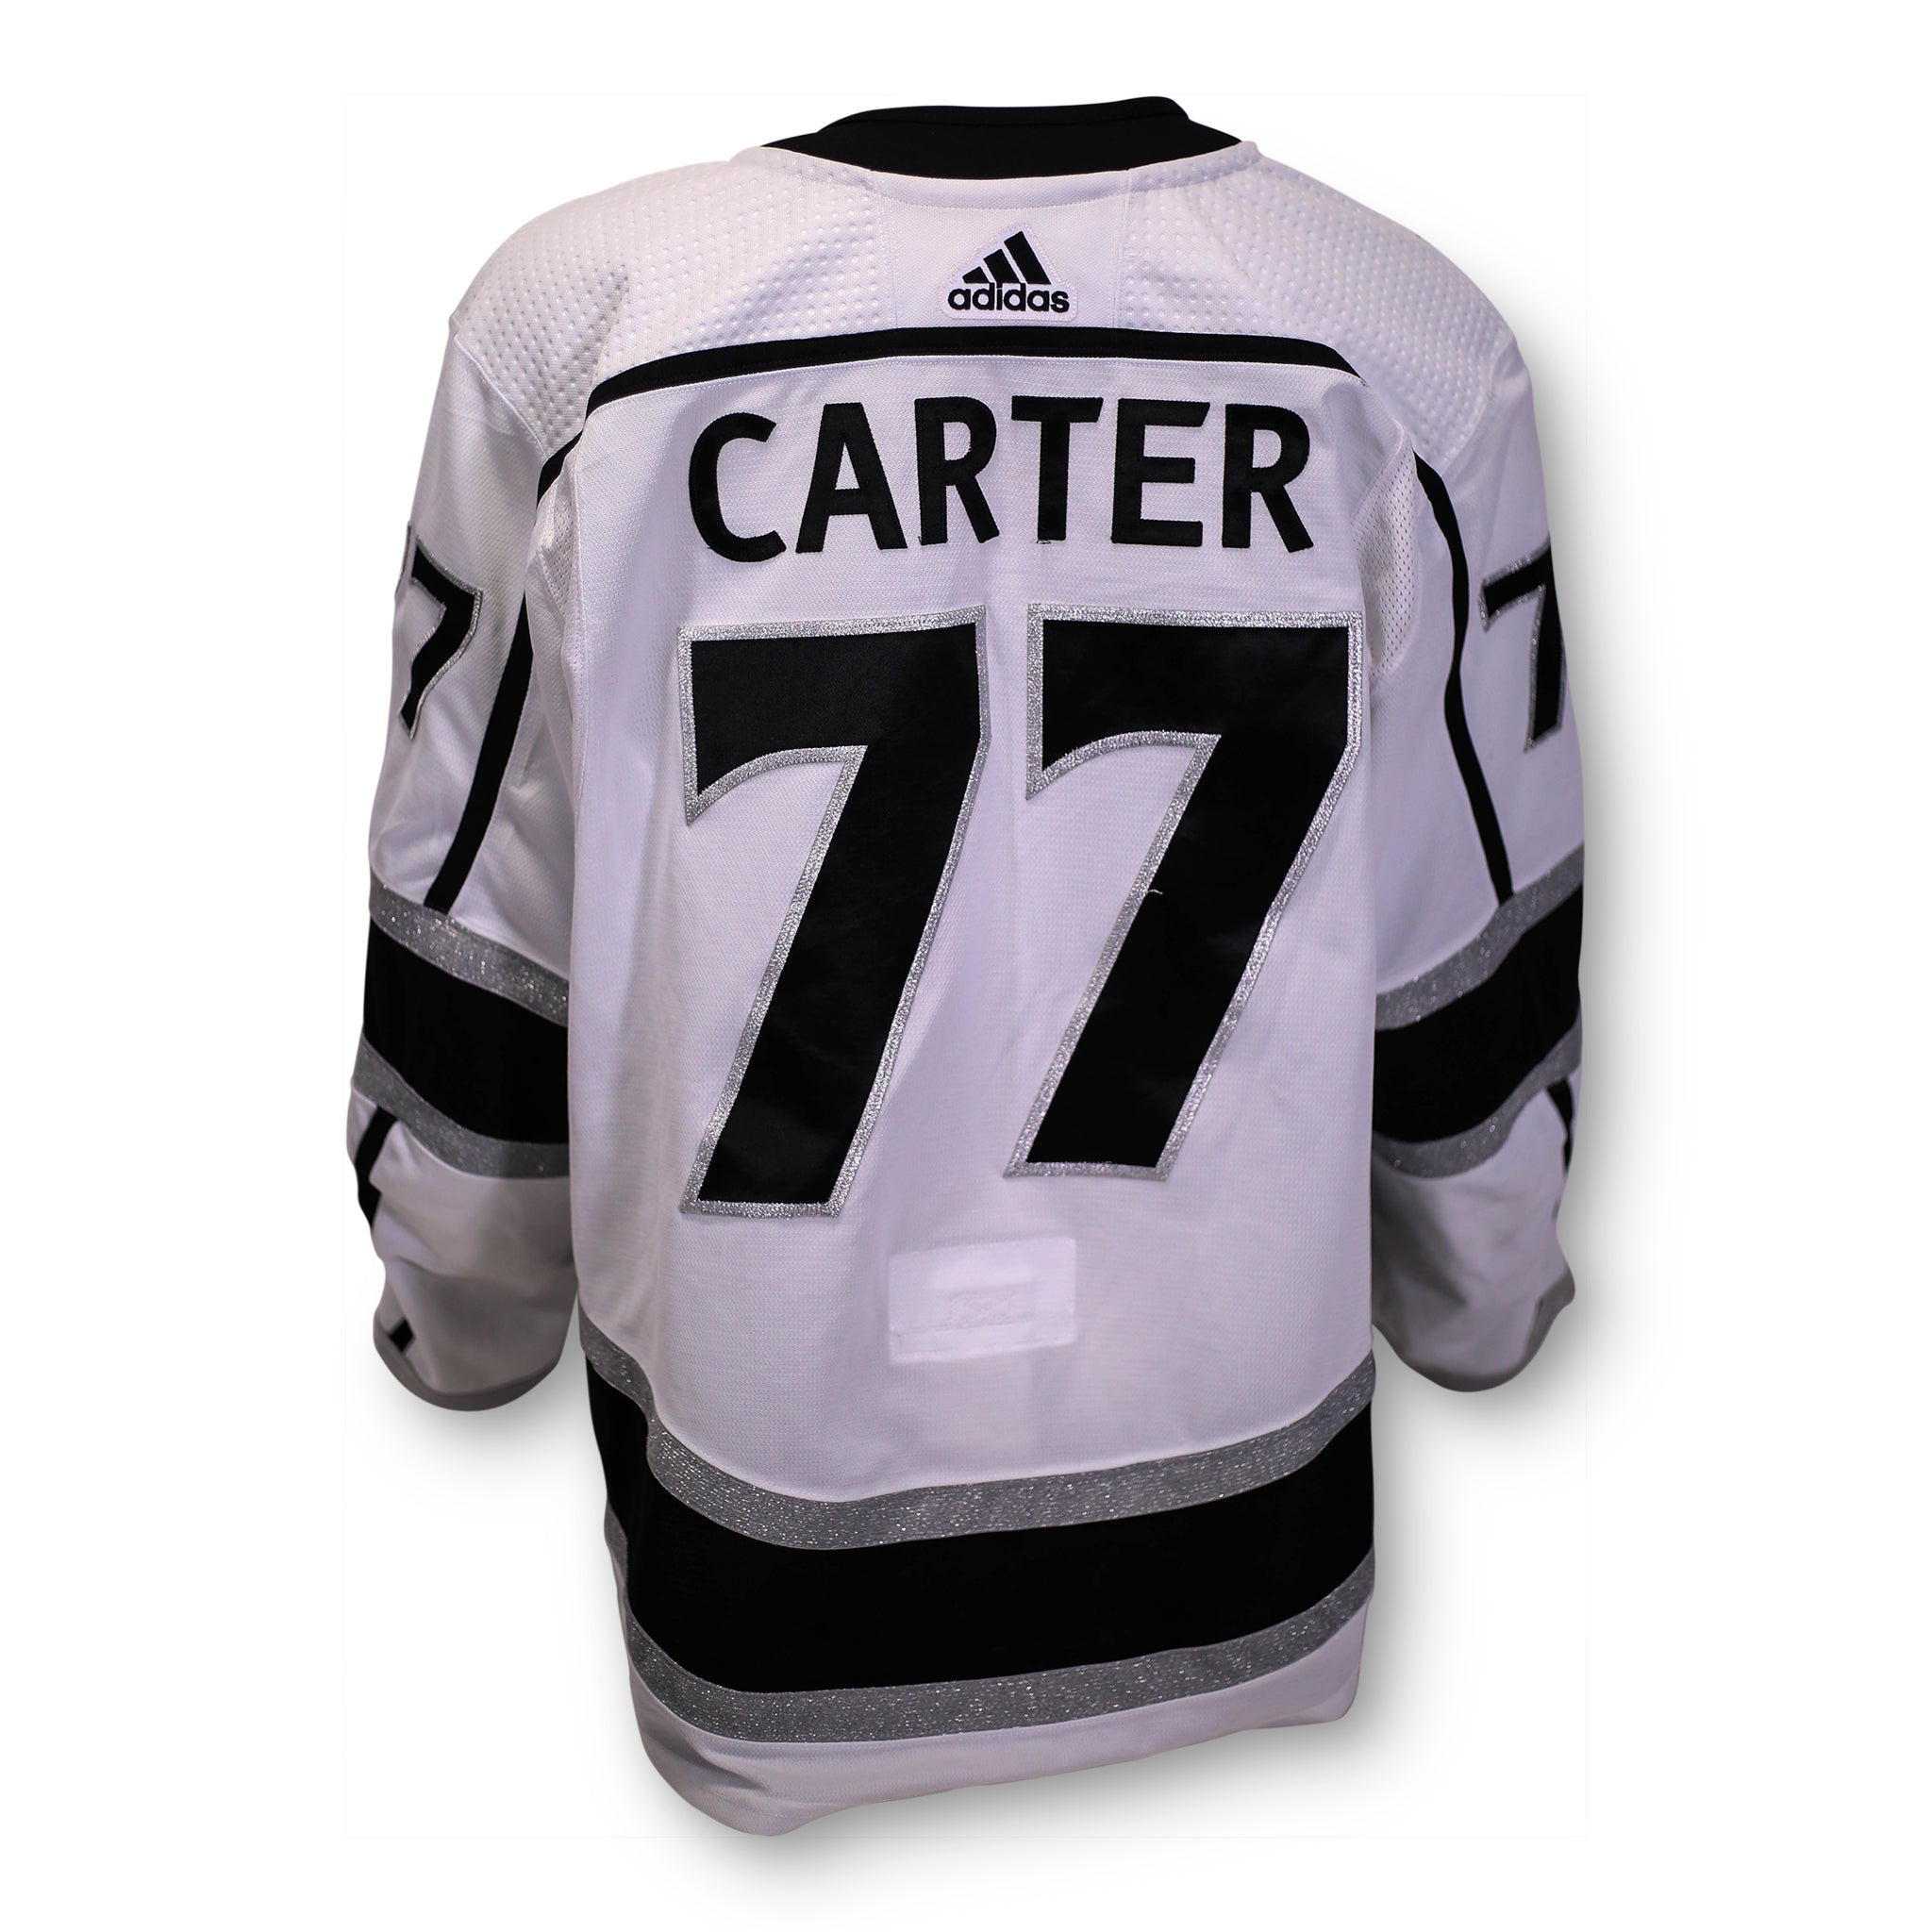 La kings throwback jersey  Jeff carter, La kings hockey, Kings hockey